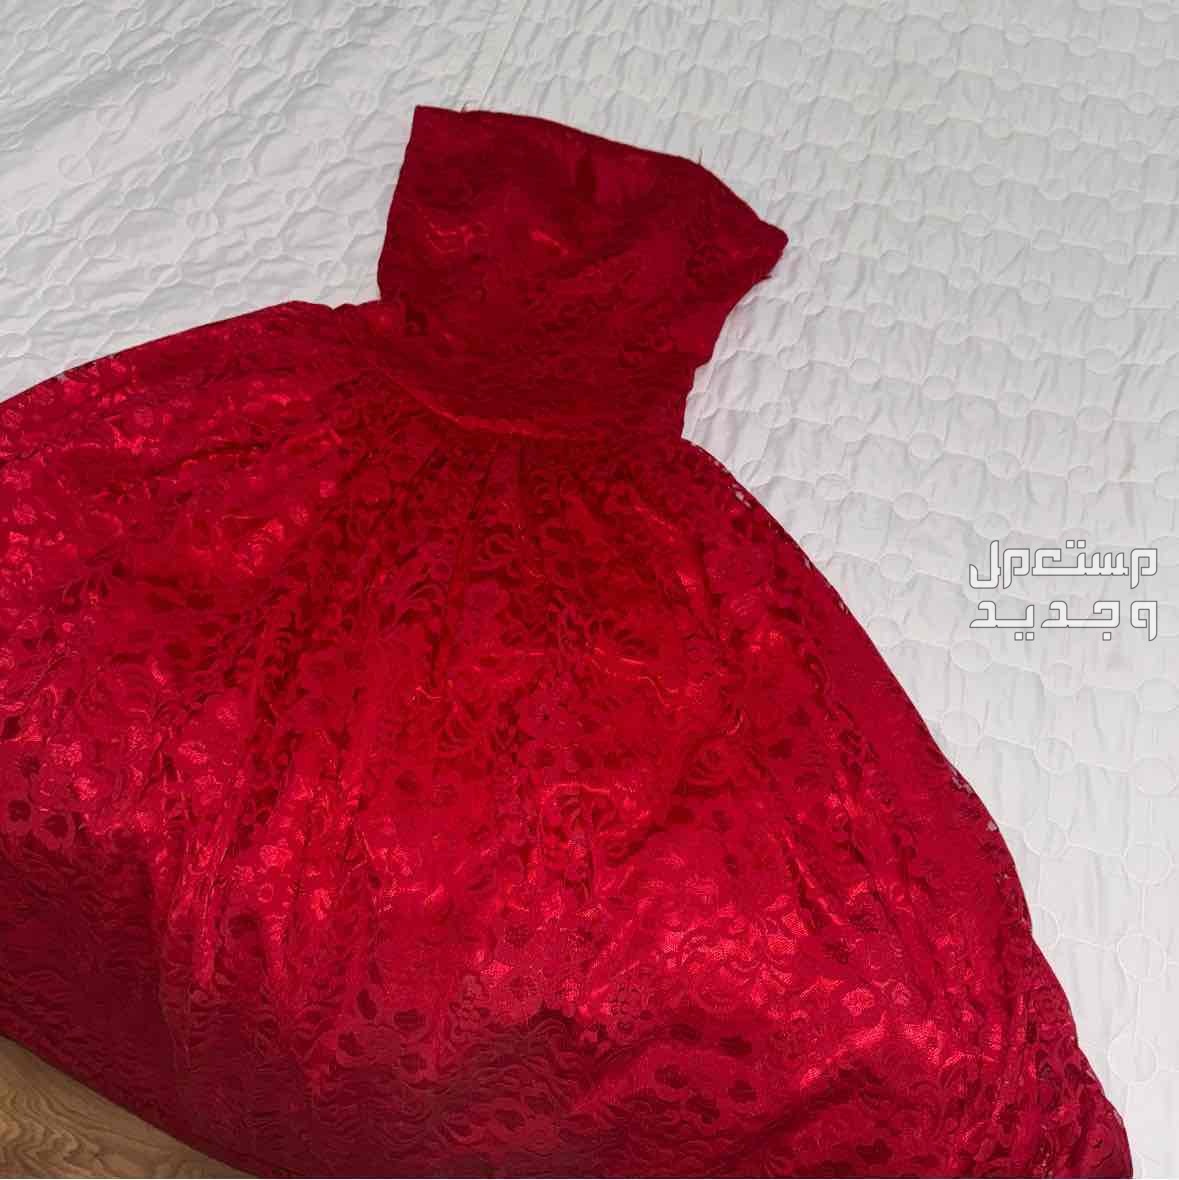 فستان دنتيل فرنسي تم تفصيله ب 600 ولبس مره وحده بس وجديد  في الرياض بسعر 100 ريال سعودي